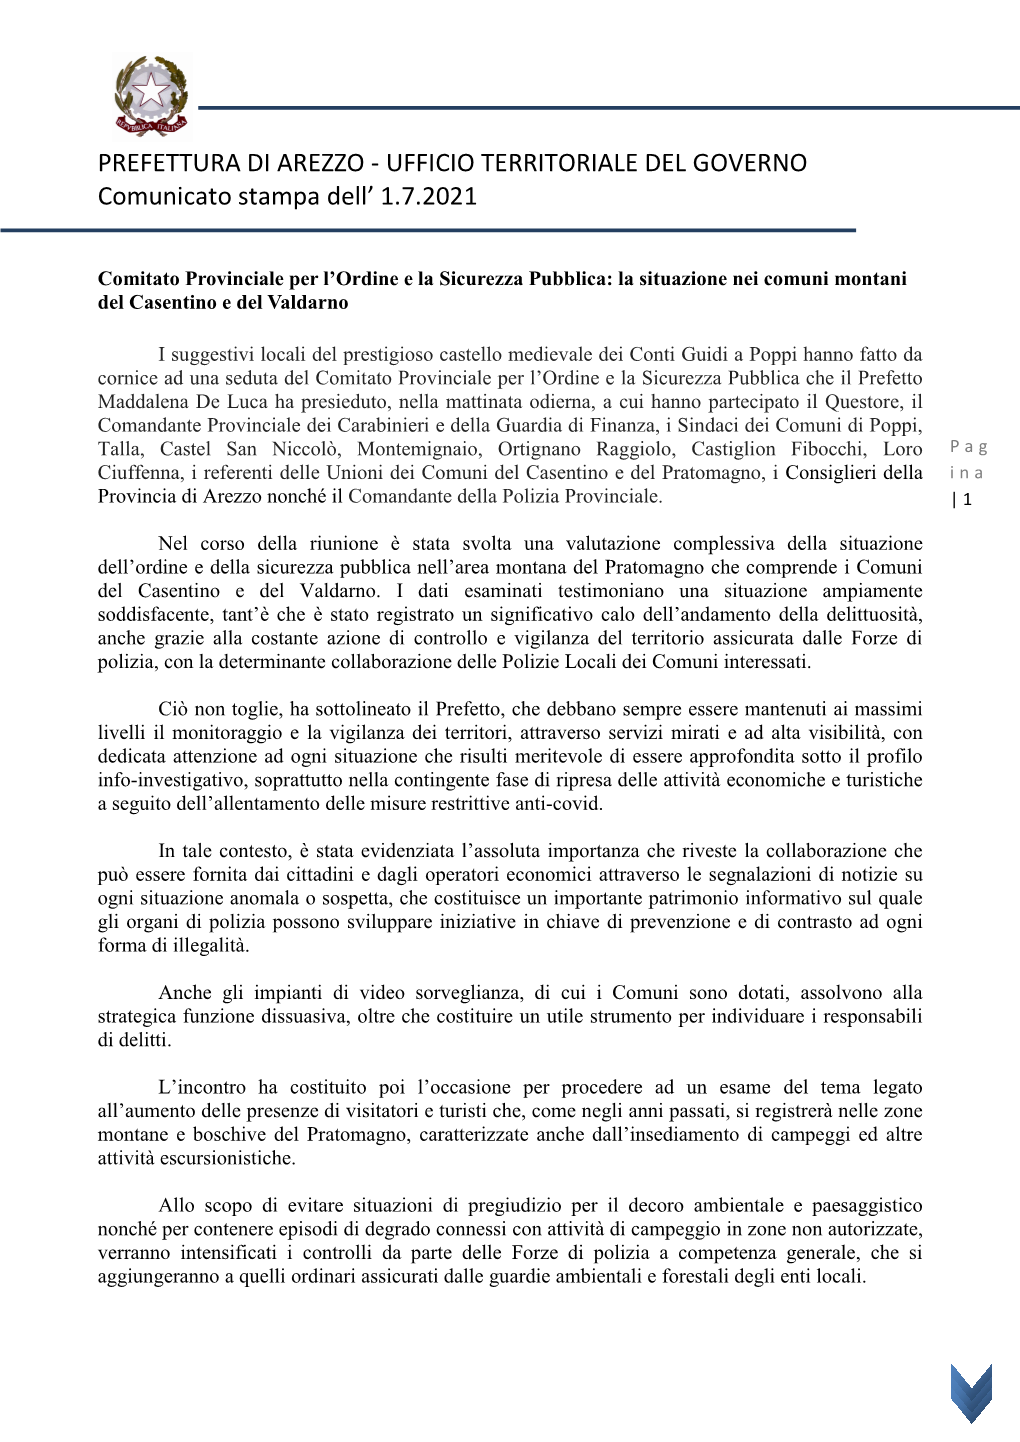 PREFETTURA DI AREZZO - UFFICIO TERRITORIALE DEL GOVERNO Comunicato Stampa Dell’ 1.7.2021